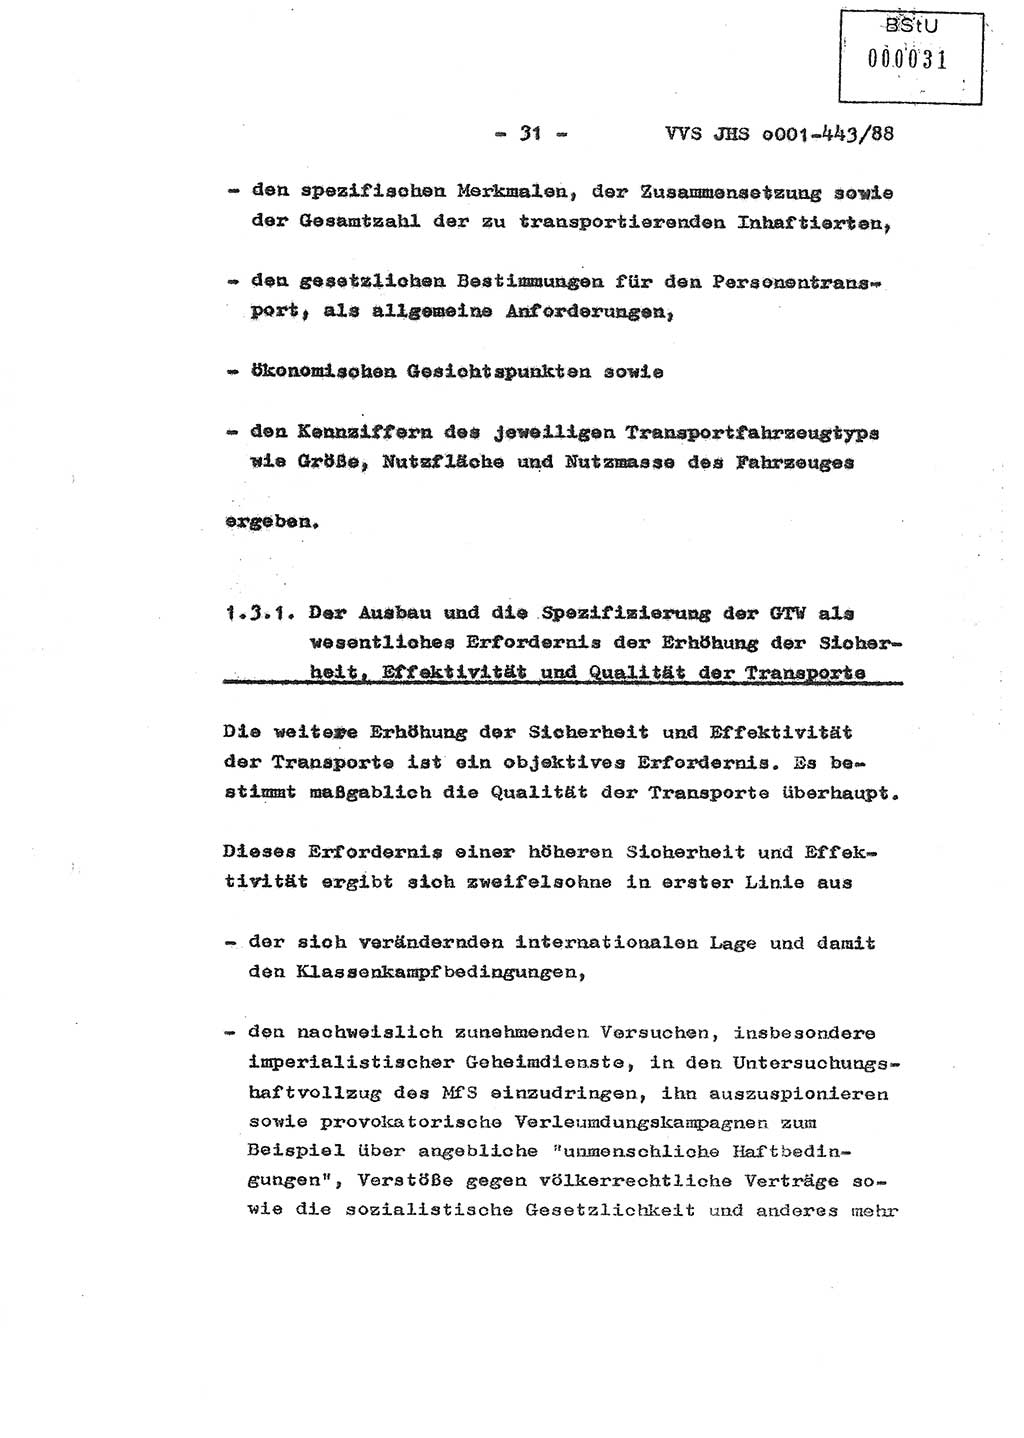 Diplomarbeit Hauptmann Michael Rast (Abt. ⅩⅣ), Major Bernd Rahaus (Abt. ⅩⅣ), Ministerium für Staatssicherheit (MfS) [Deutsche Demokratische Republik (DDR)], Juristische Hochschule (JHS), Vertrauliche Verschlußsache (VVS) o001-443/88, Potsdam 1988, Seite 31 (Dipl.-Arb. MfS DDR JHS VVS o001-443/88 1988, S. 31)